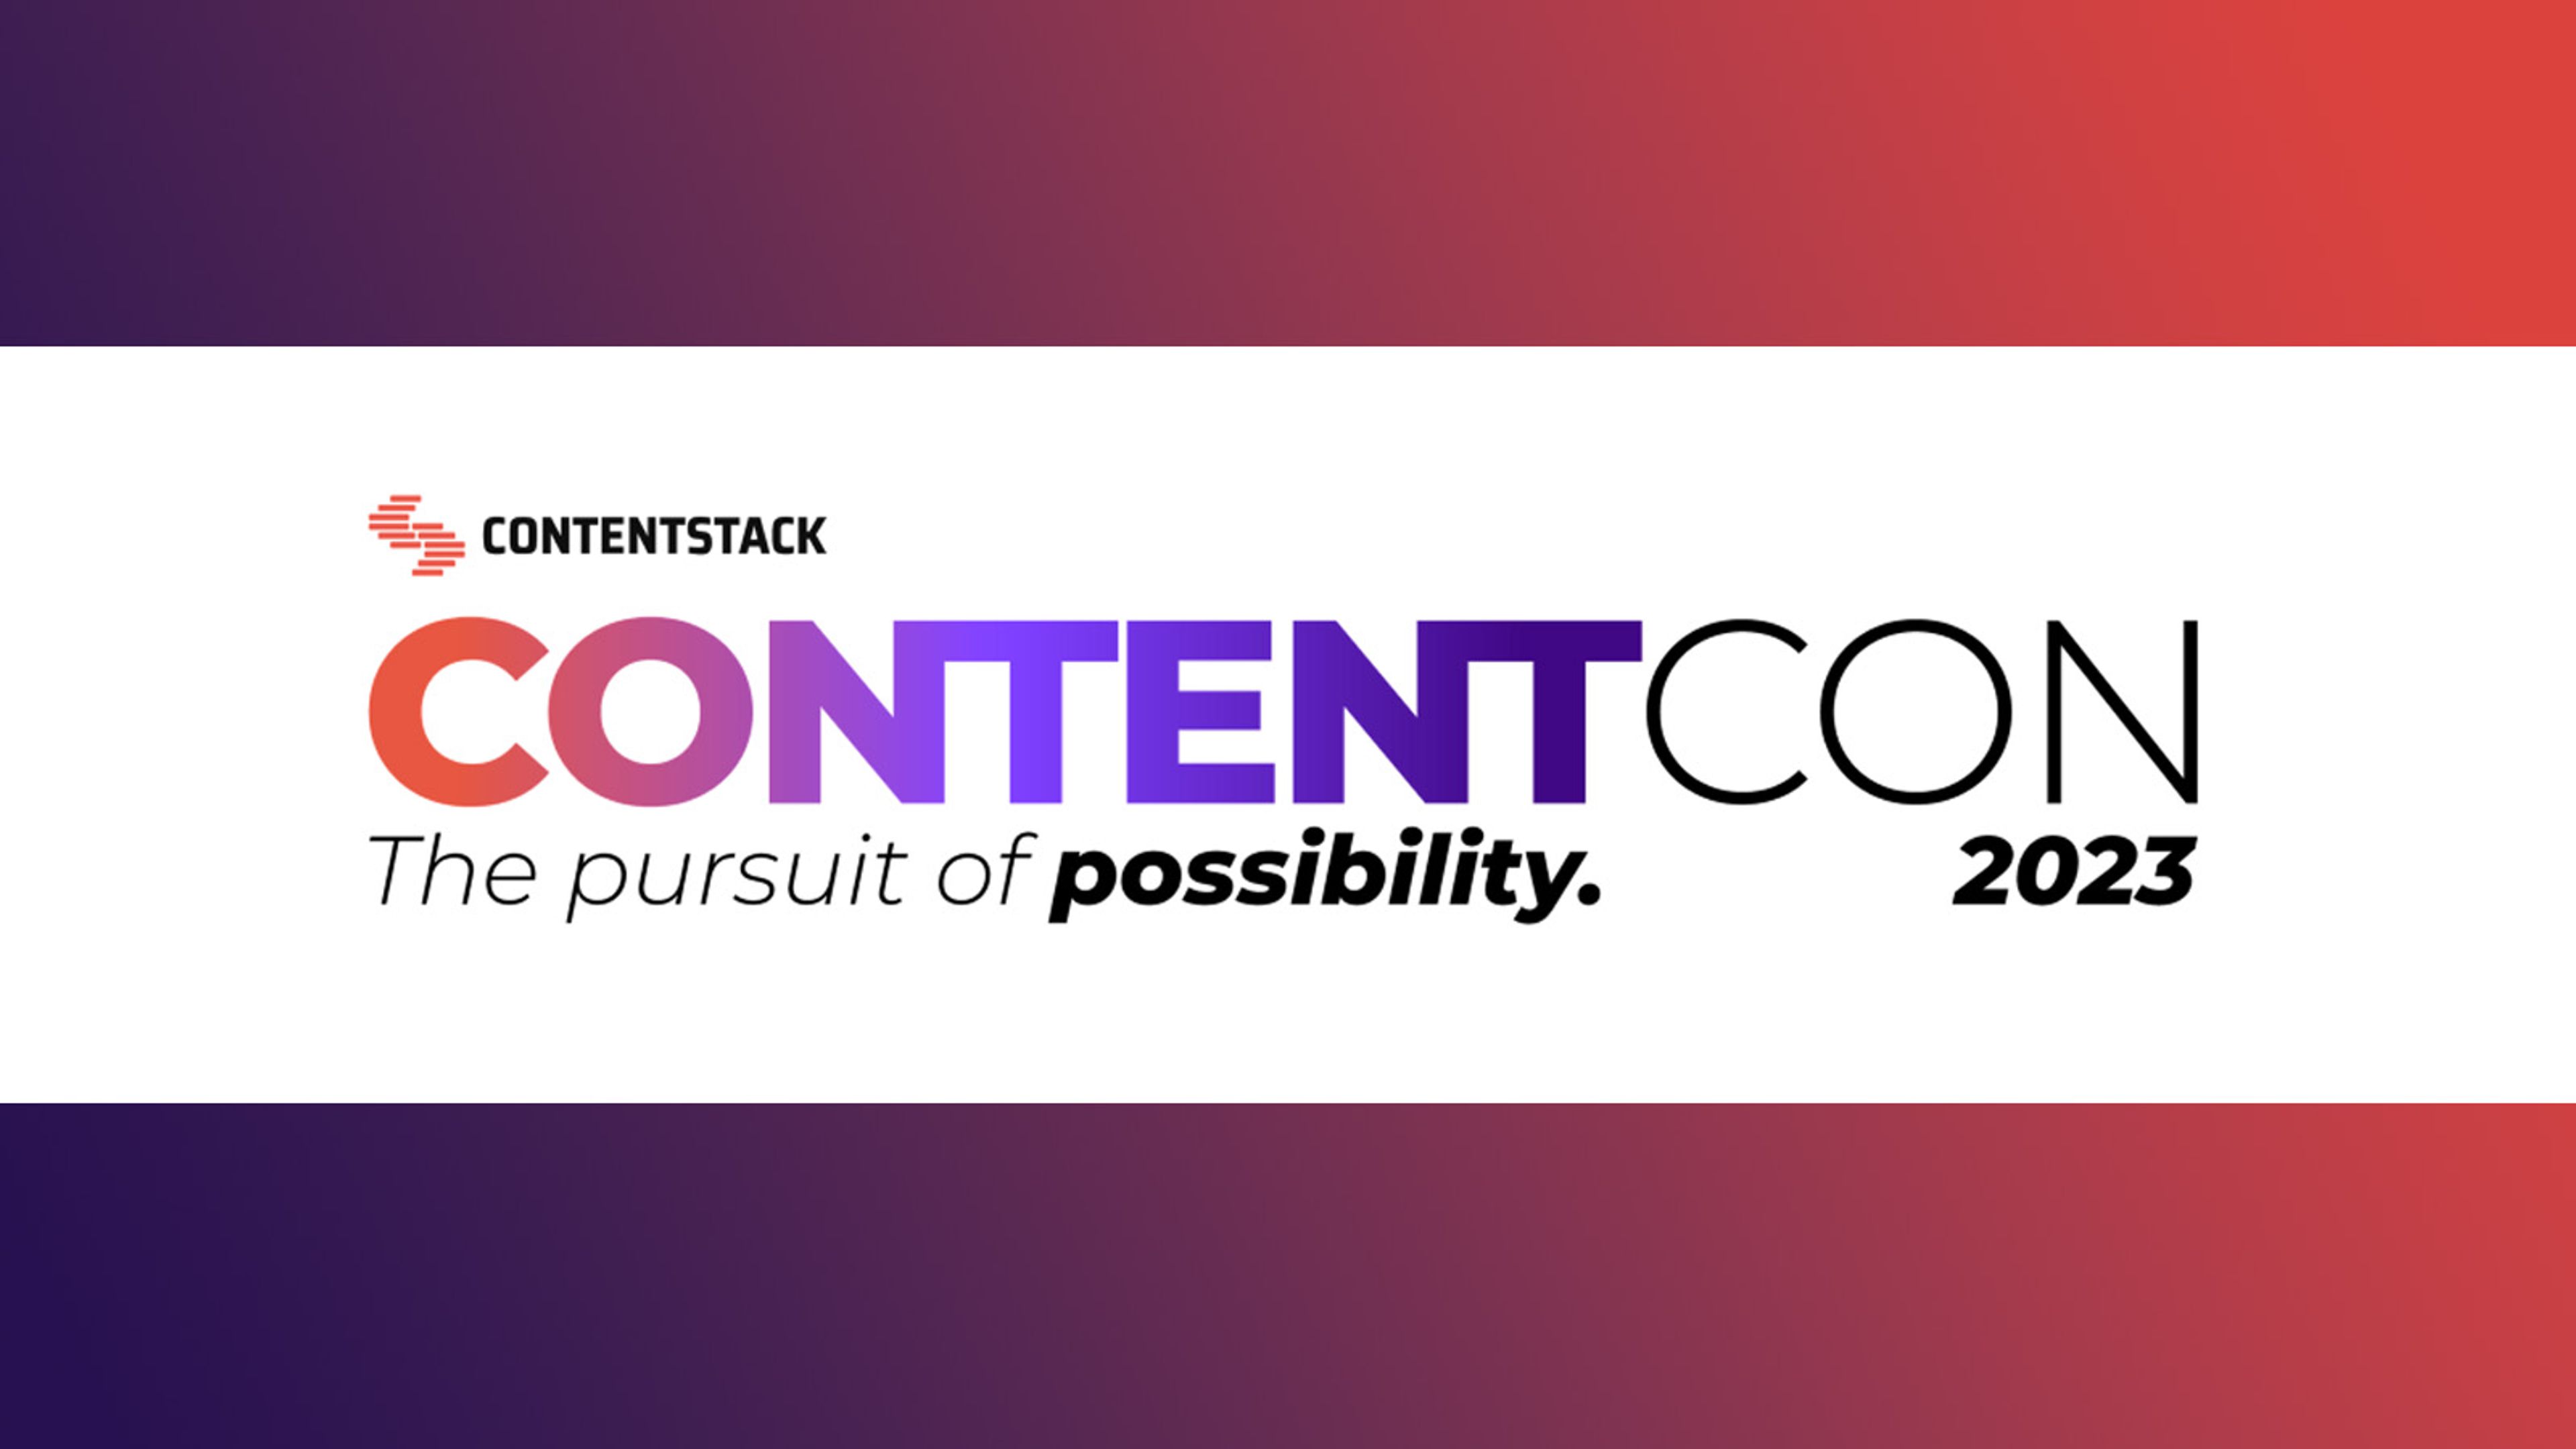 Contentstack ContentCon 2023 logo